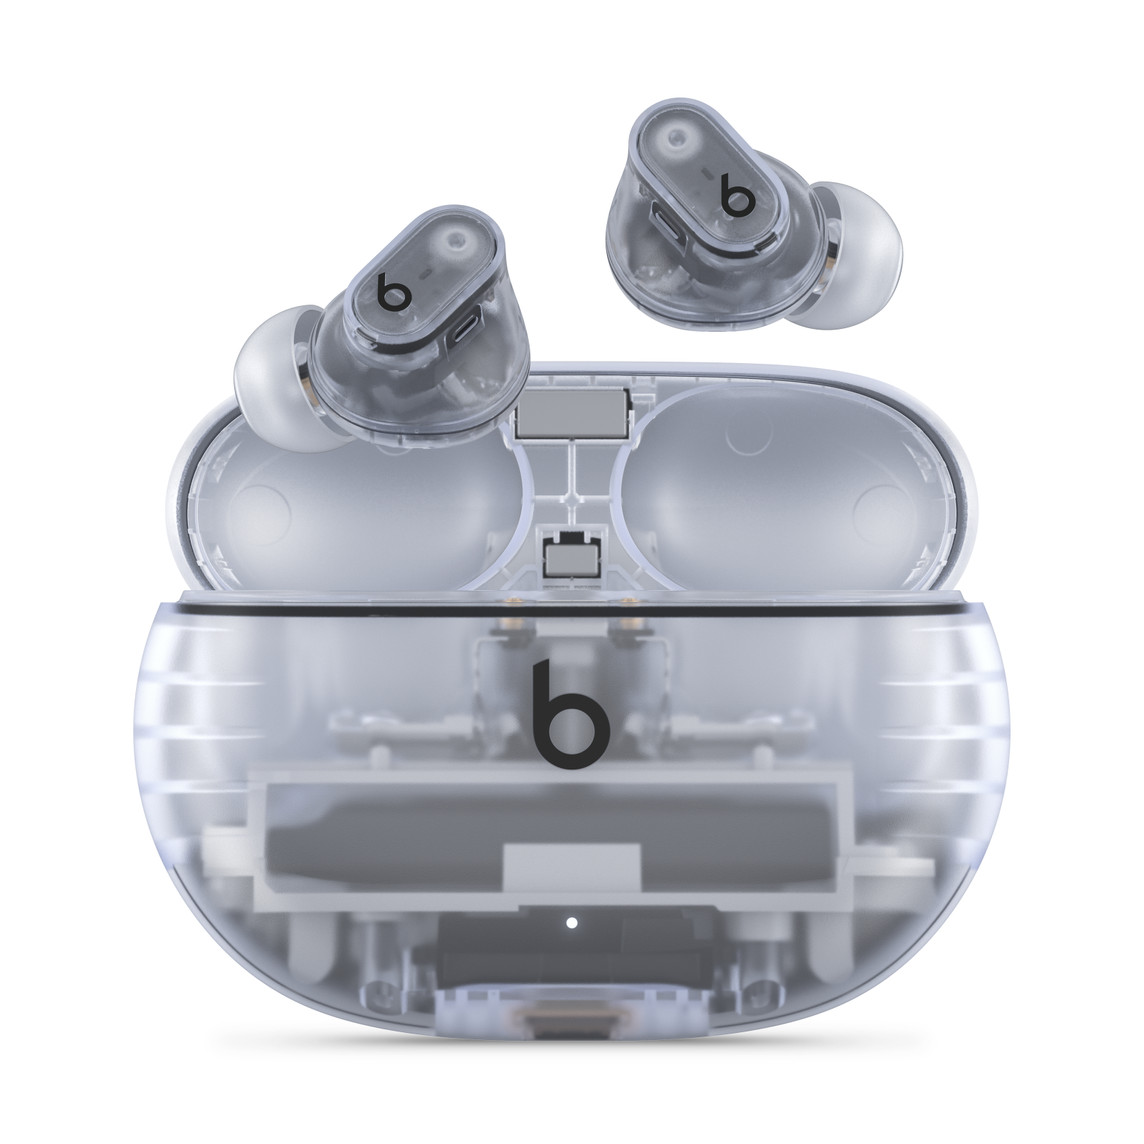 Beats Studio Buds +, o autêntico fone de ouvido sem fio com cancelamento de ruído, na cor Translúcida e com o logotipo da Beats acima do prático estojo de recarga.